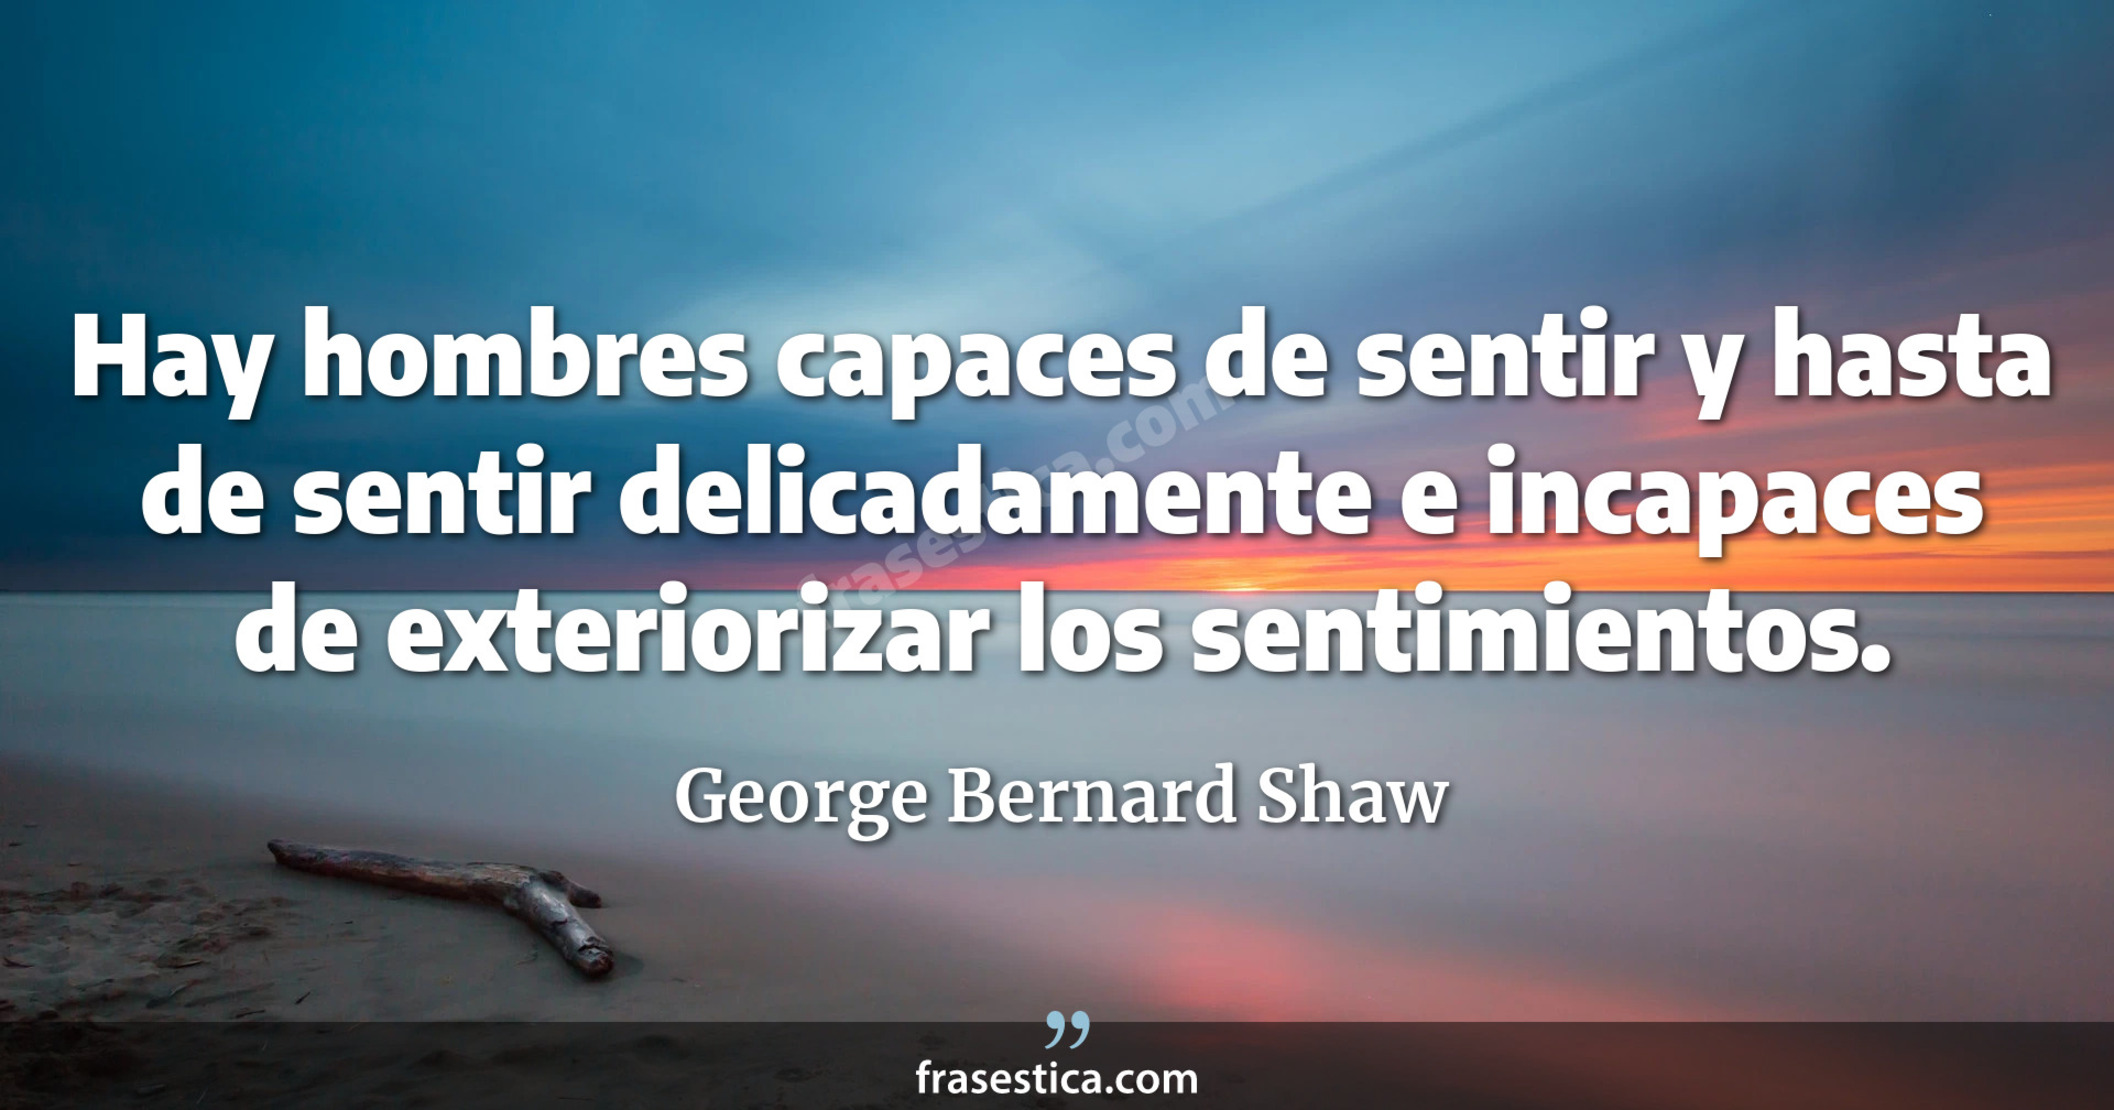 Hay hombres capaces de sentir y hasta de sentir delicadamente e incapaces de exteriorizar los sentimientos. - George Bernard Shaw